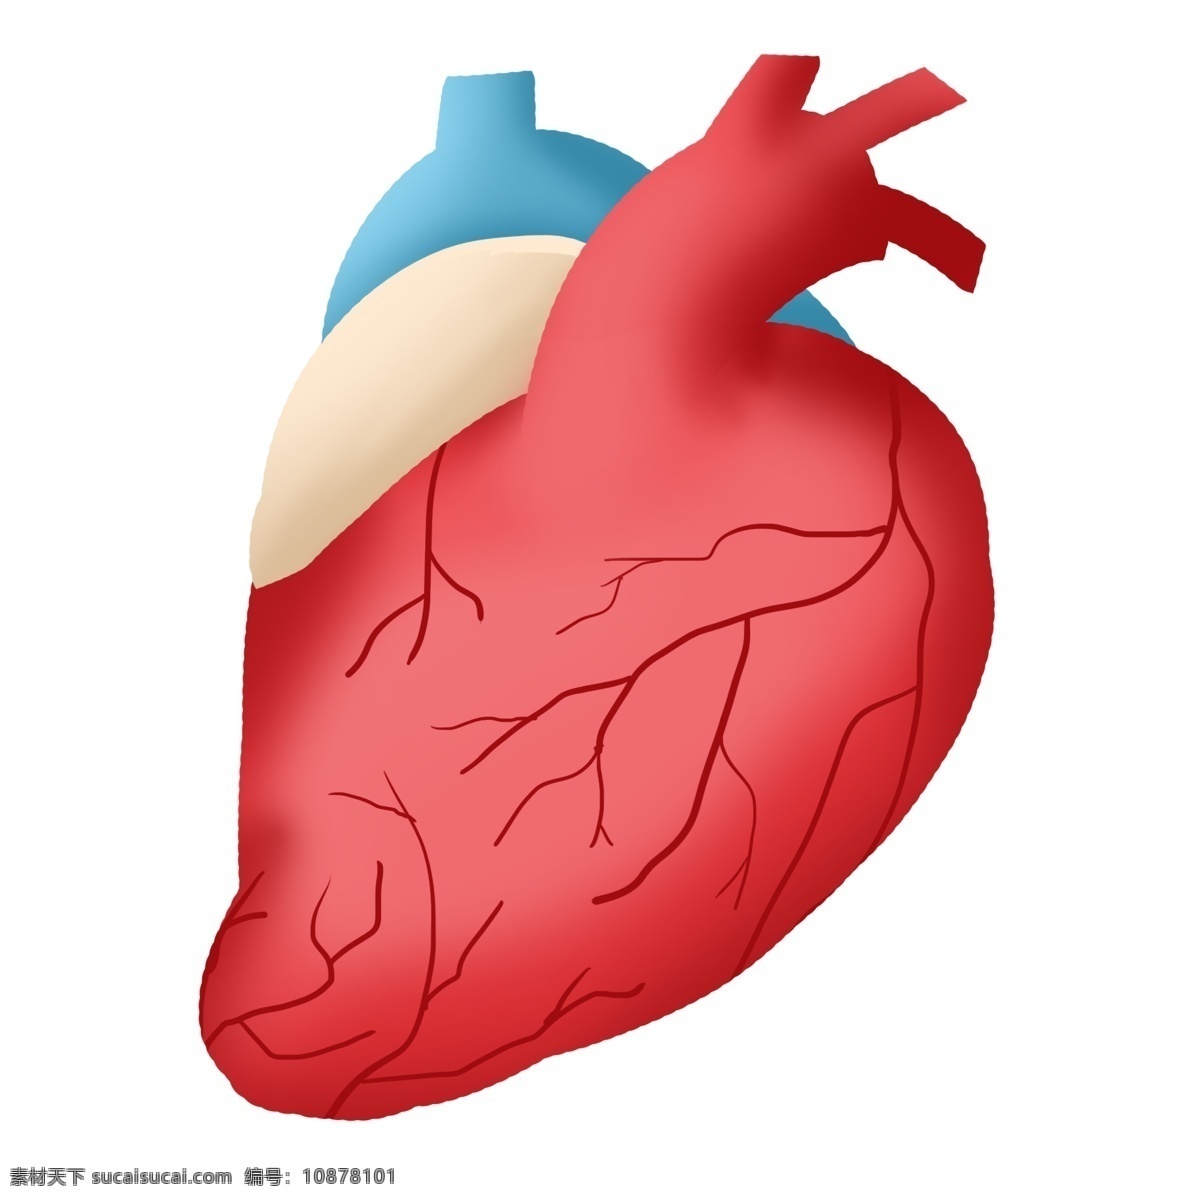 心脏人体器官 心脏 人体心脏 心